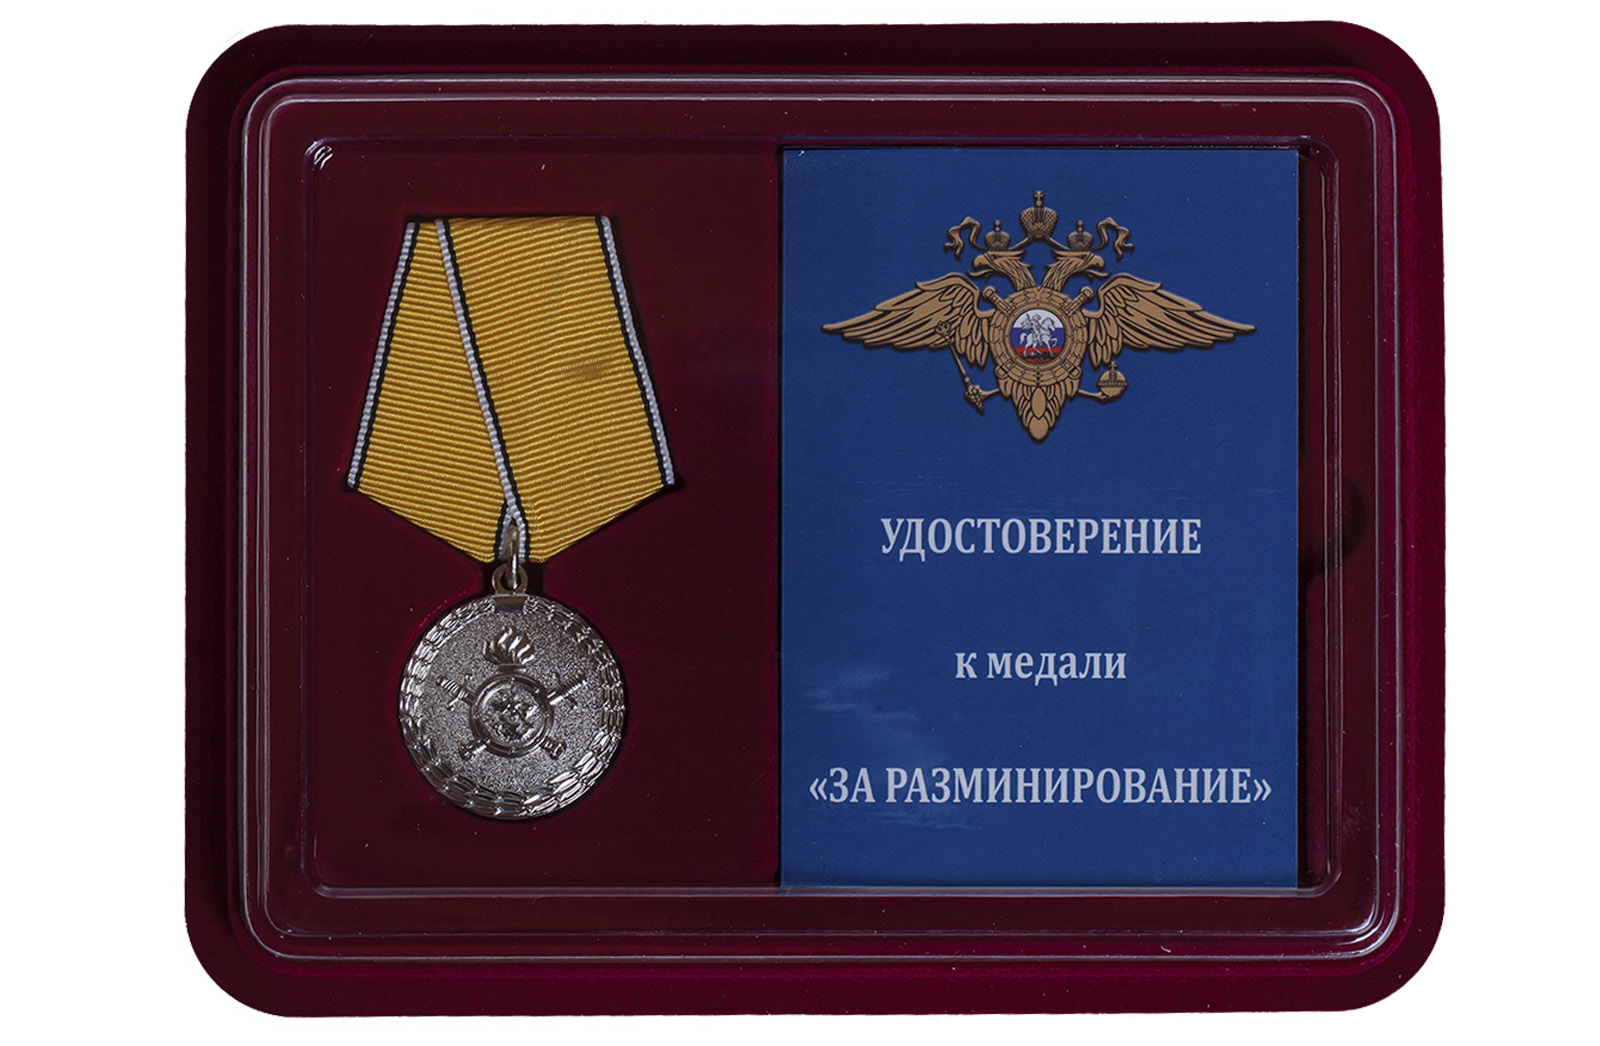 Купить медаль МВД России За разминирование по экономичной цене